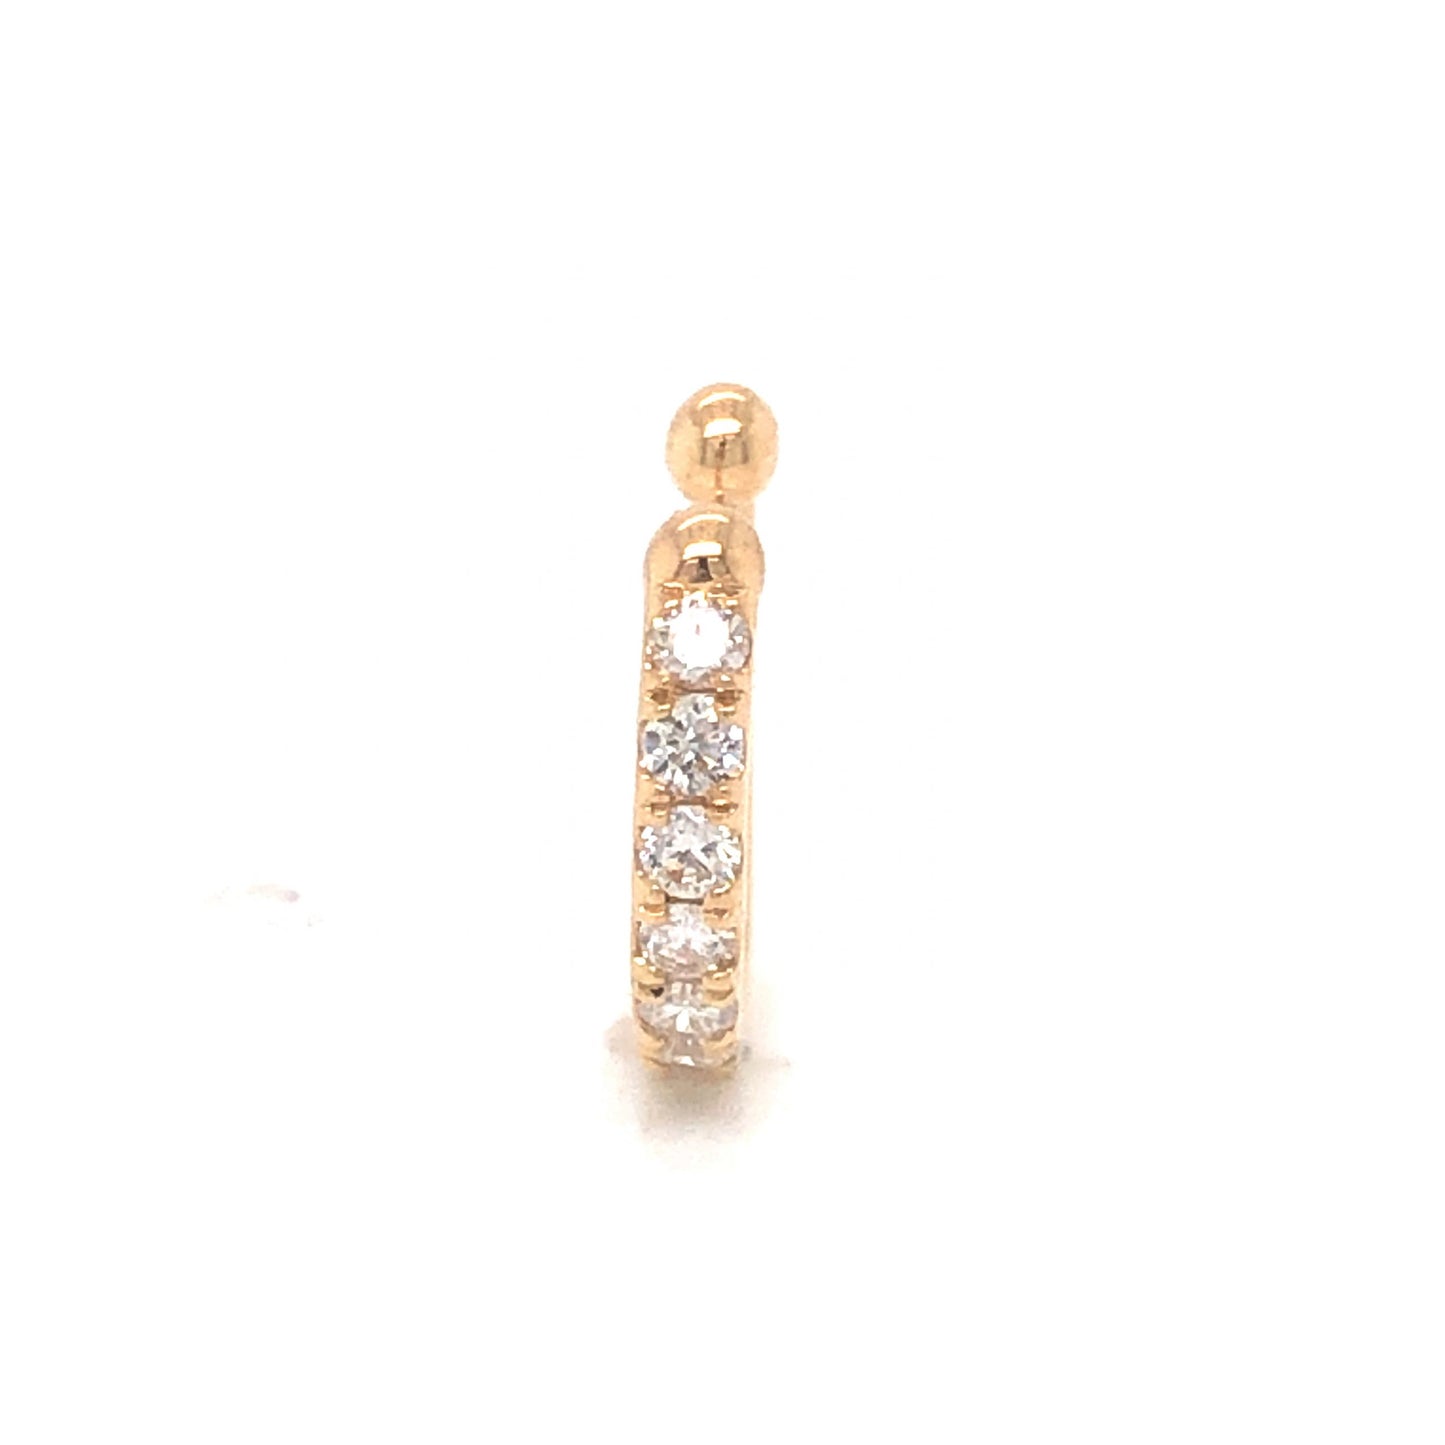 .17 Diamond Cuff Earring in 14K Yellow Gold